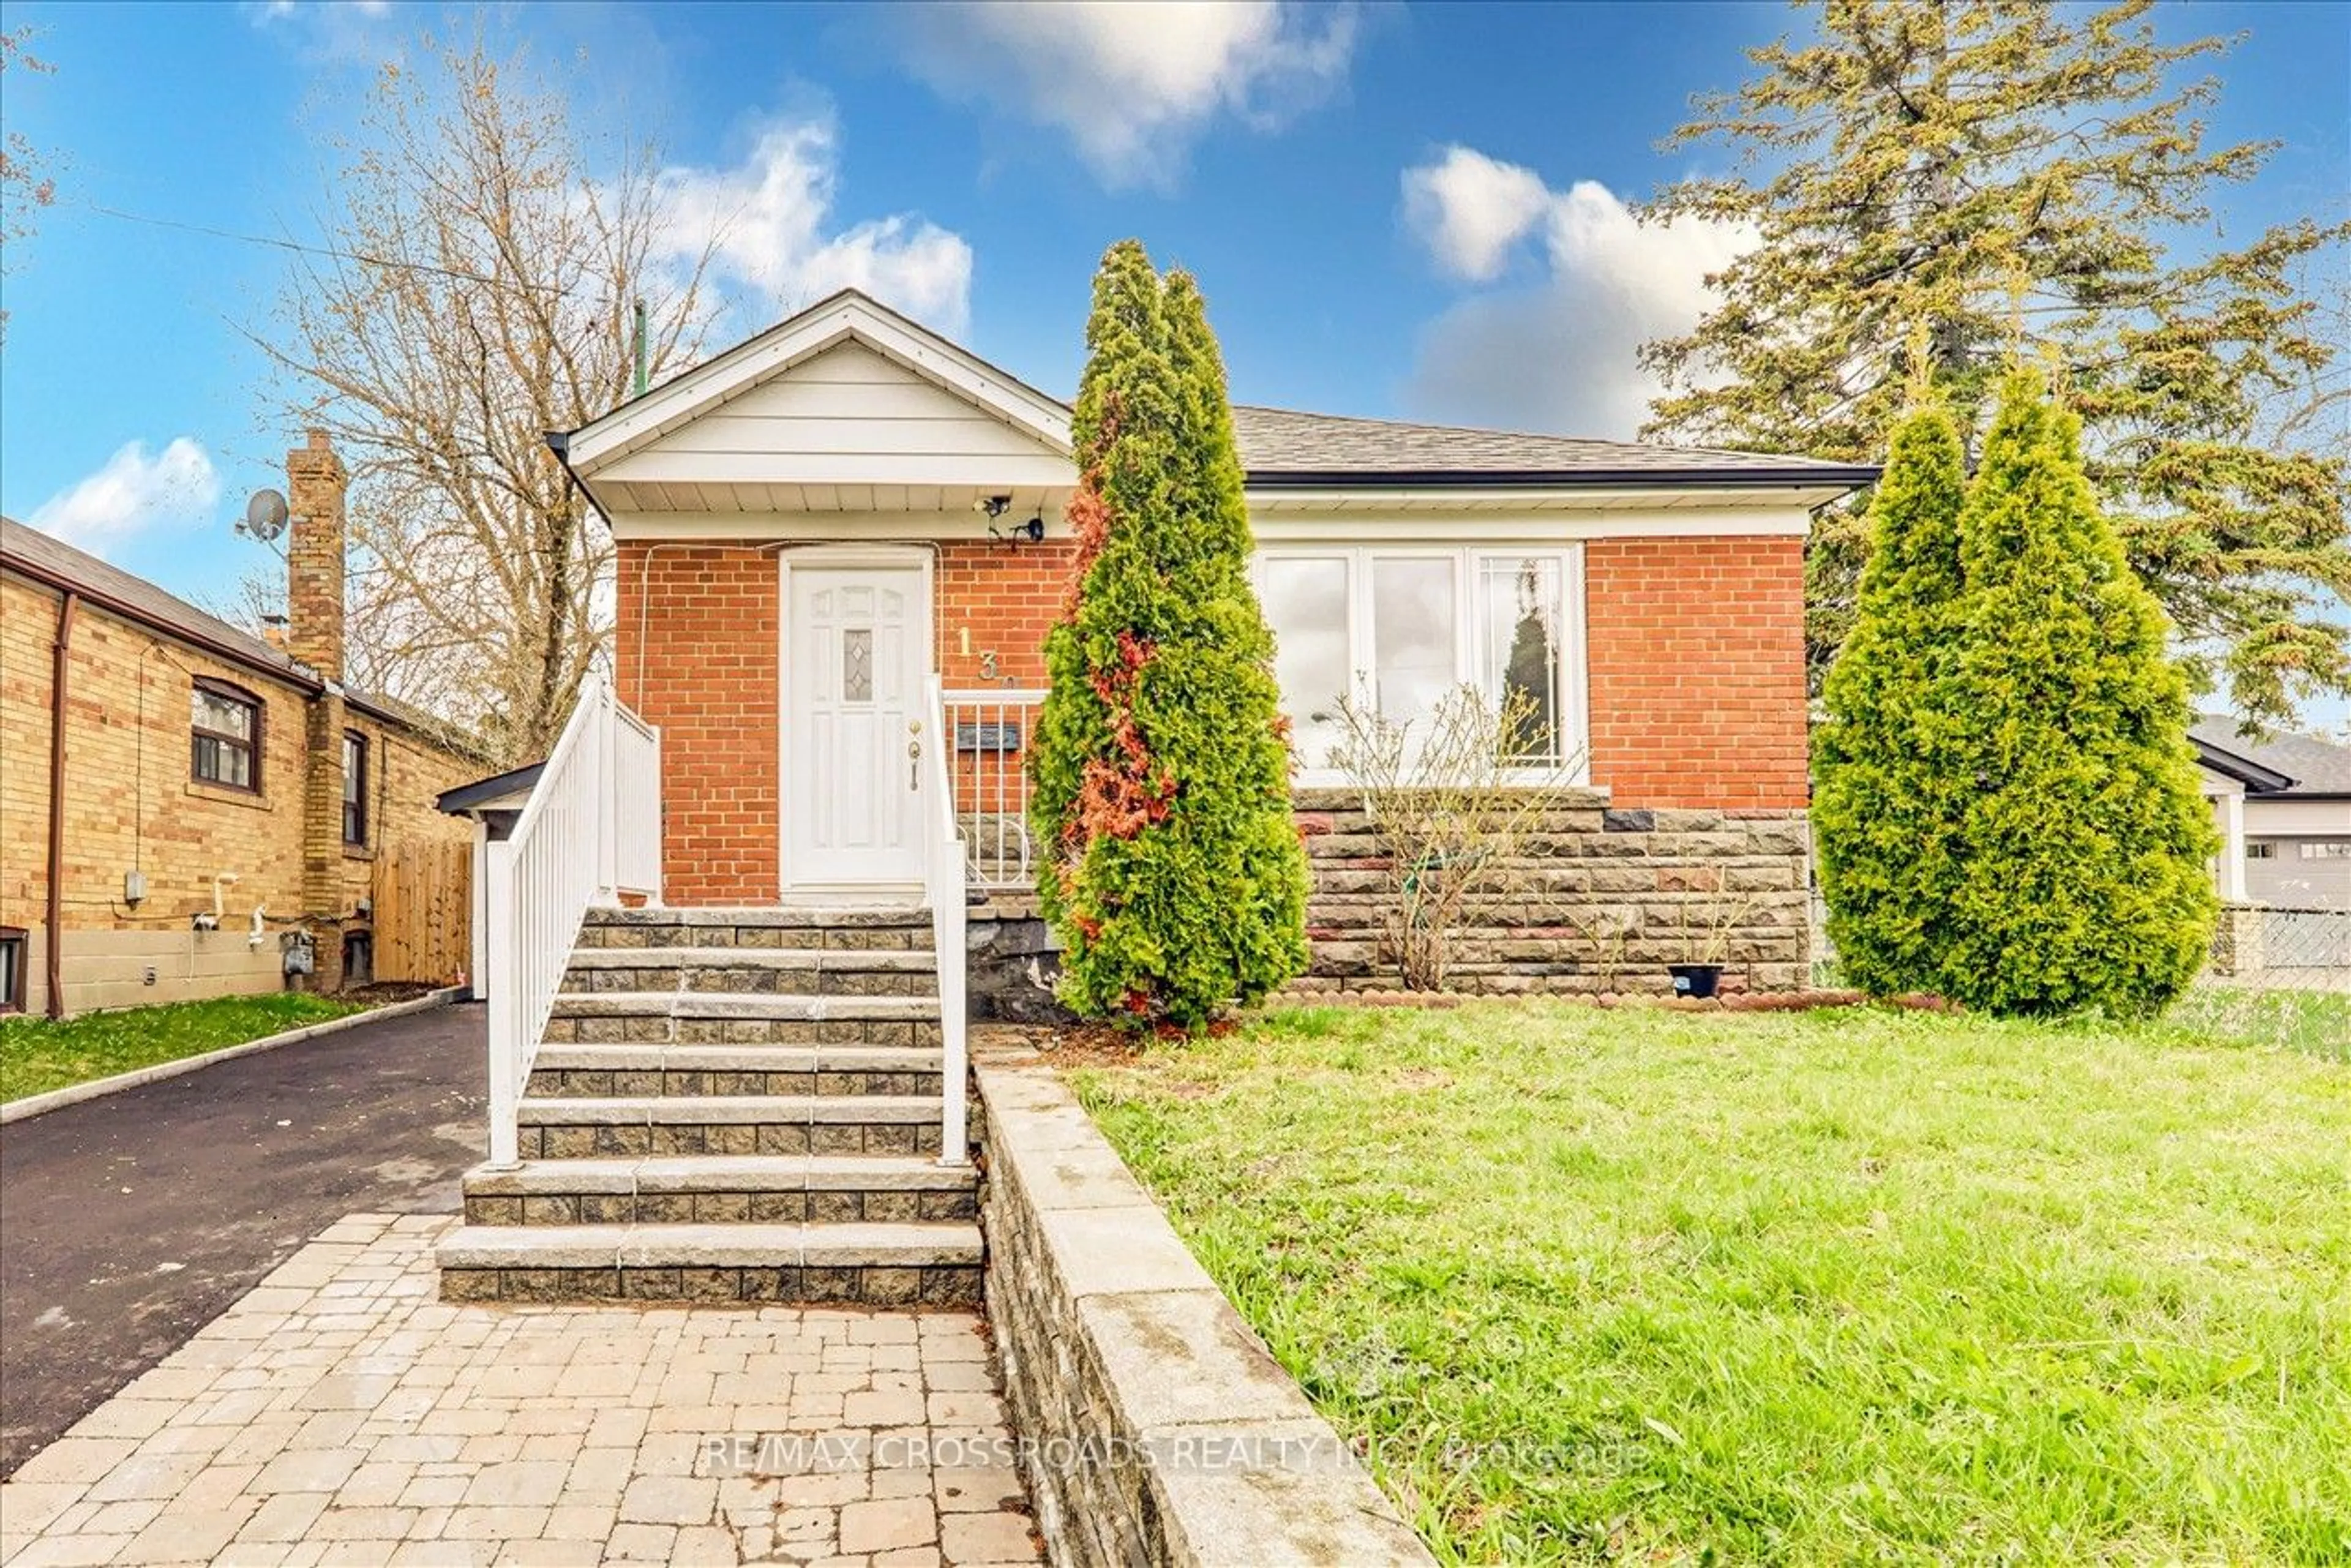 Home with brick exterior material for 130 Portsdown Rd, Toronto Ontario M1P 1V5